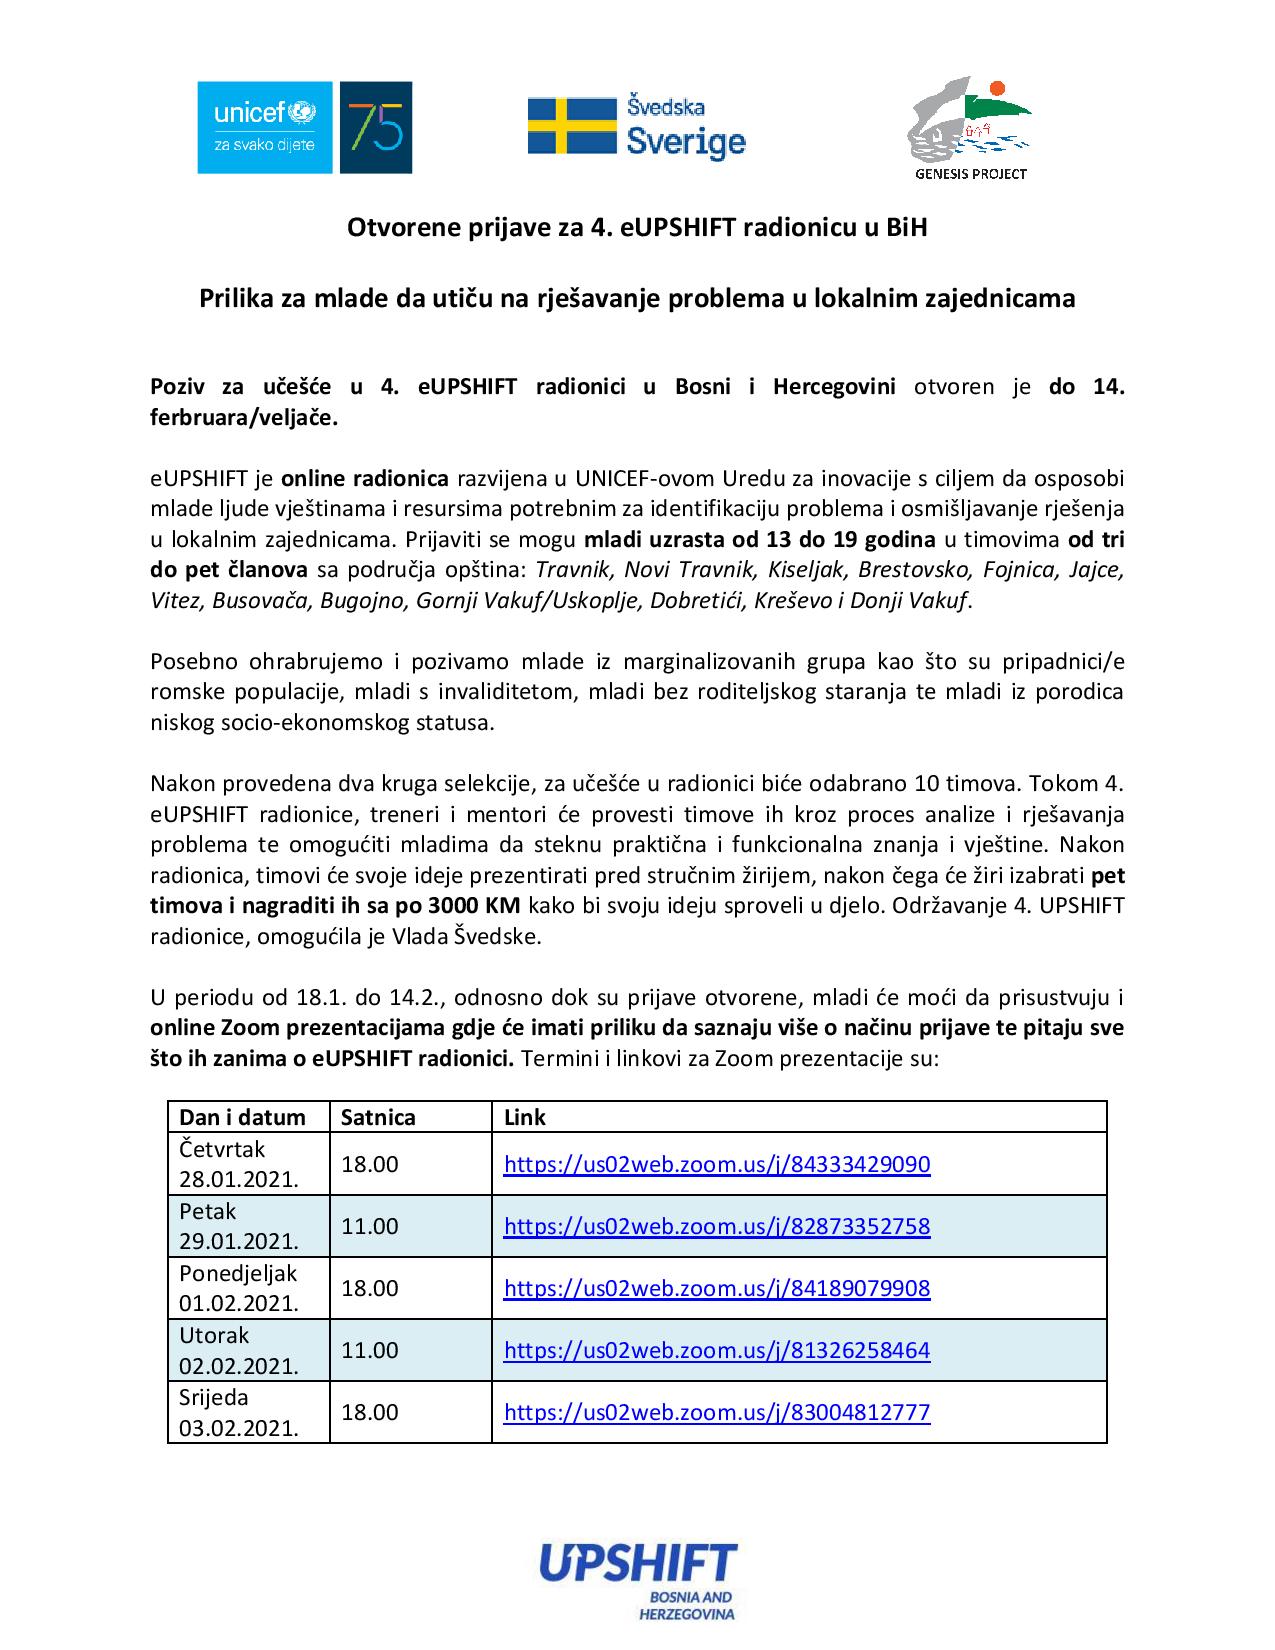 Poziv   Otvorene prijave za 4. eUPSHIFT radionicu u BiH page 001